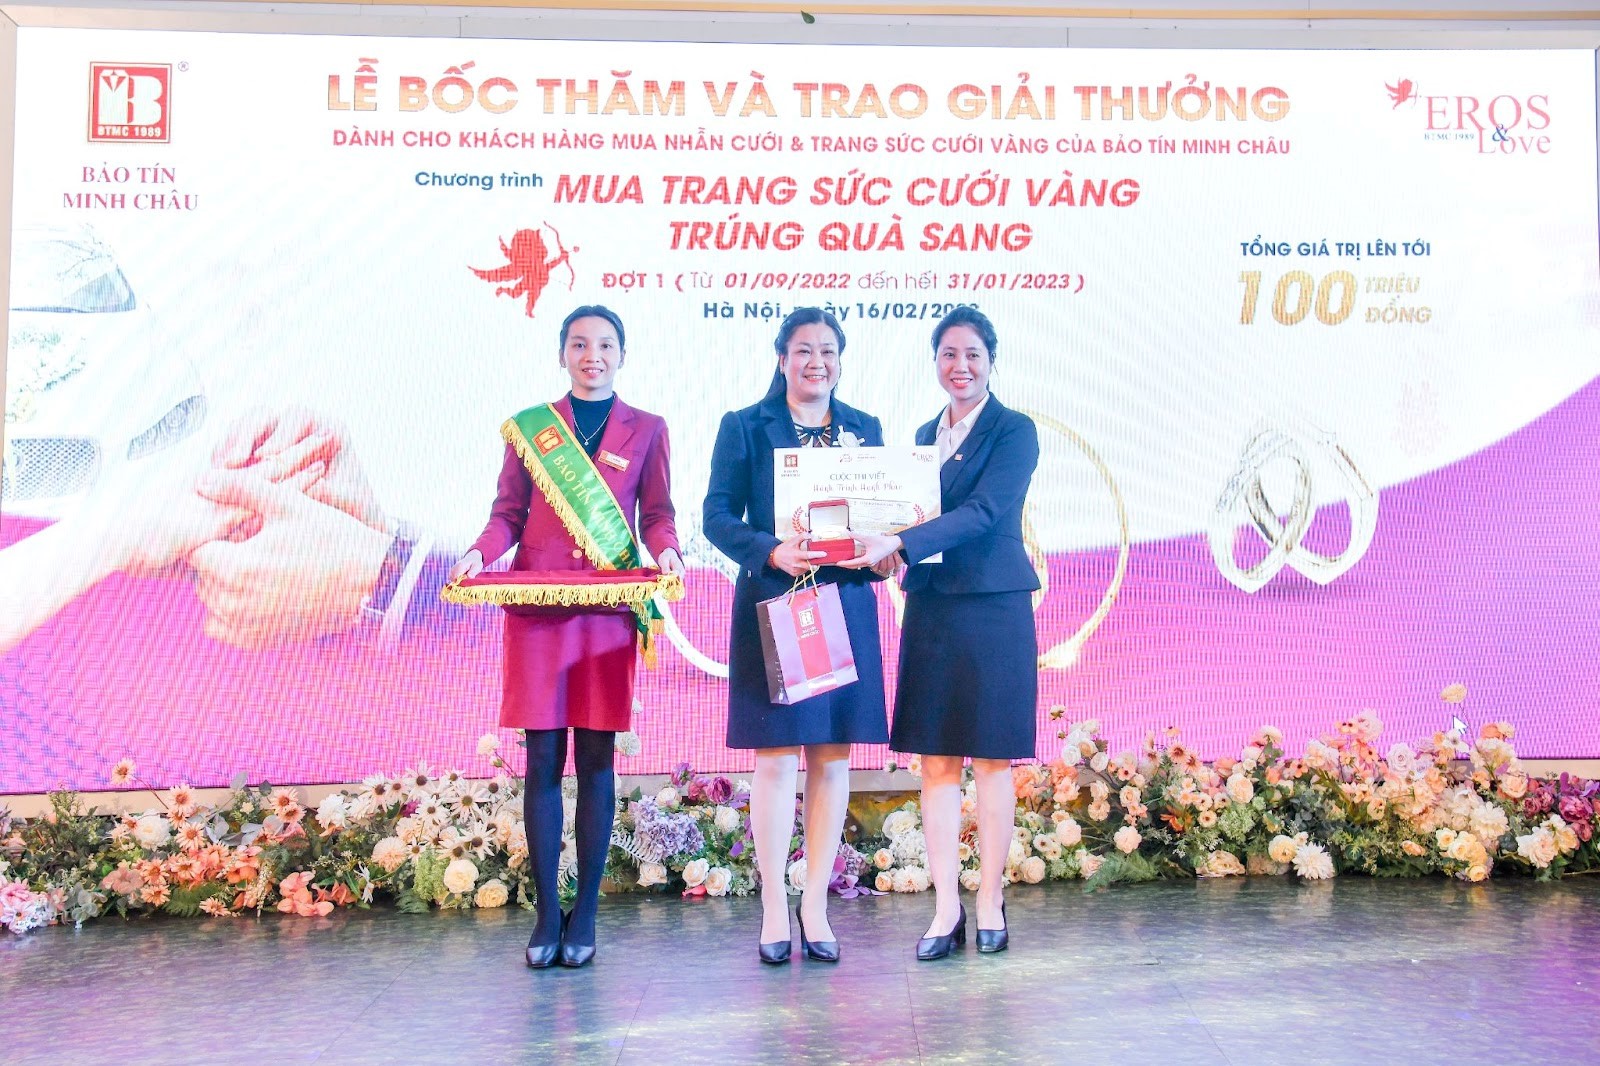 Bảo Tín Minh Châu tổ chức bốc thăm, trao thưởng cho khách hàng mùa cưới đợt 1 (2022-2023) - 4